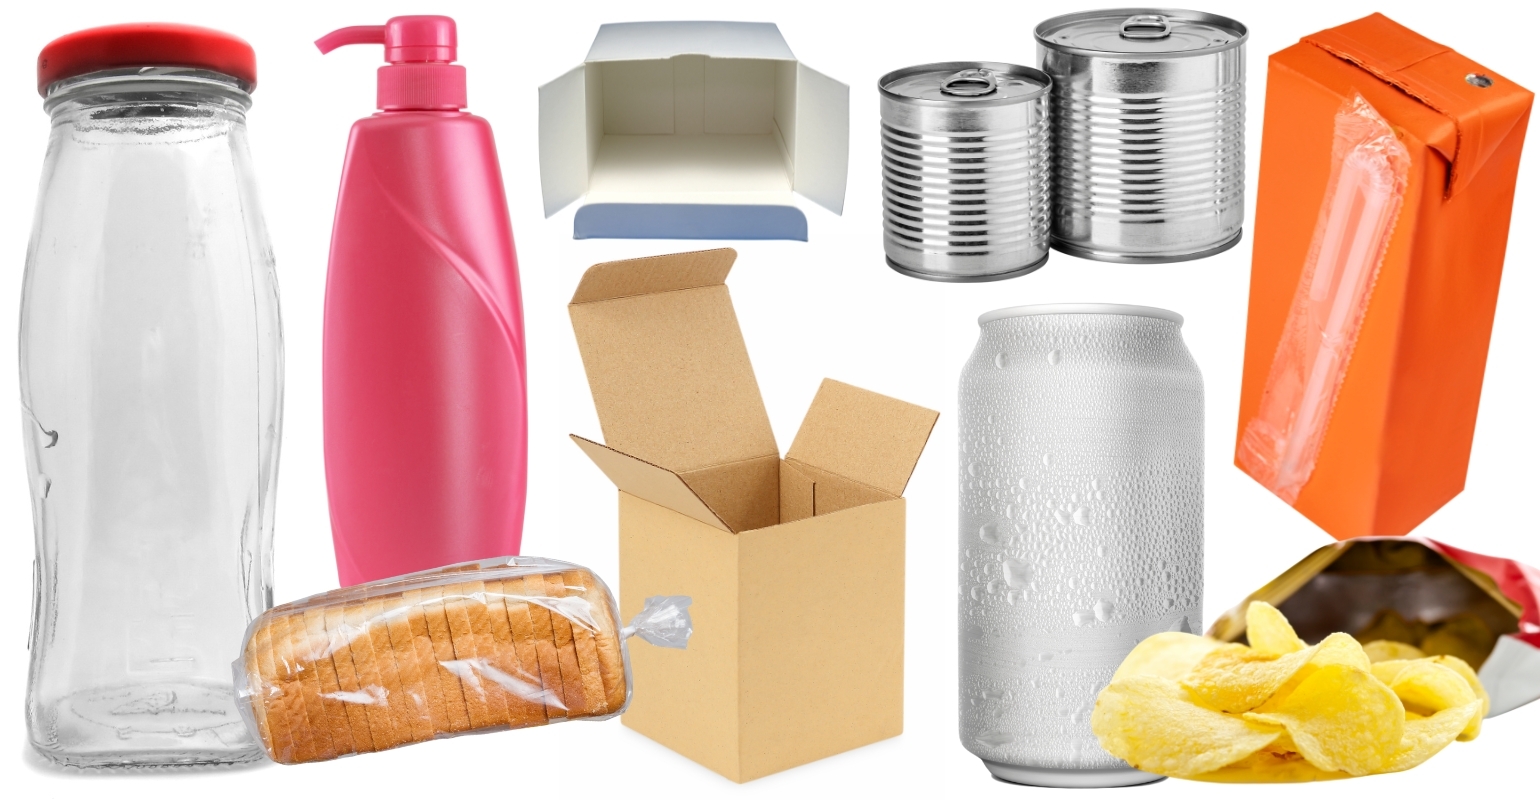 Food Packaging 101  Types & Regulations